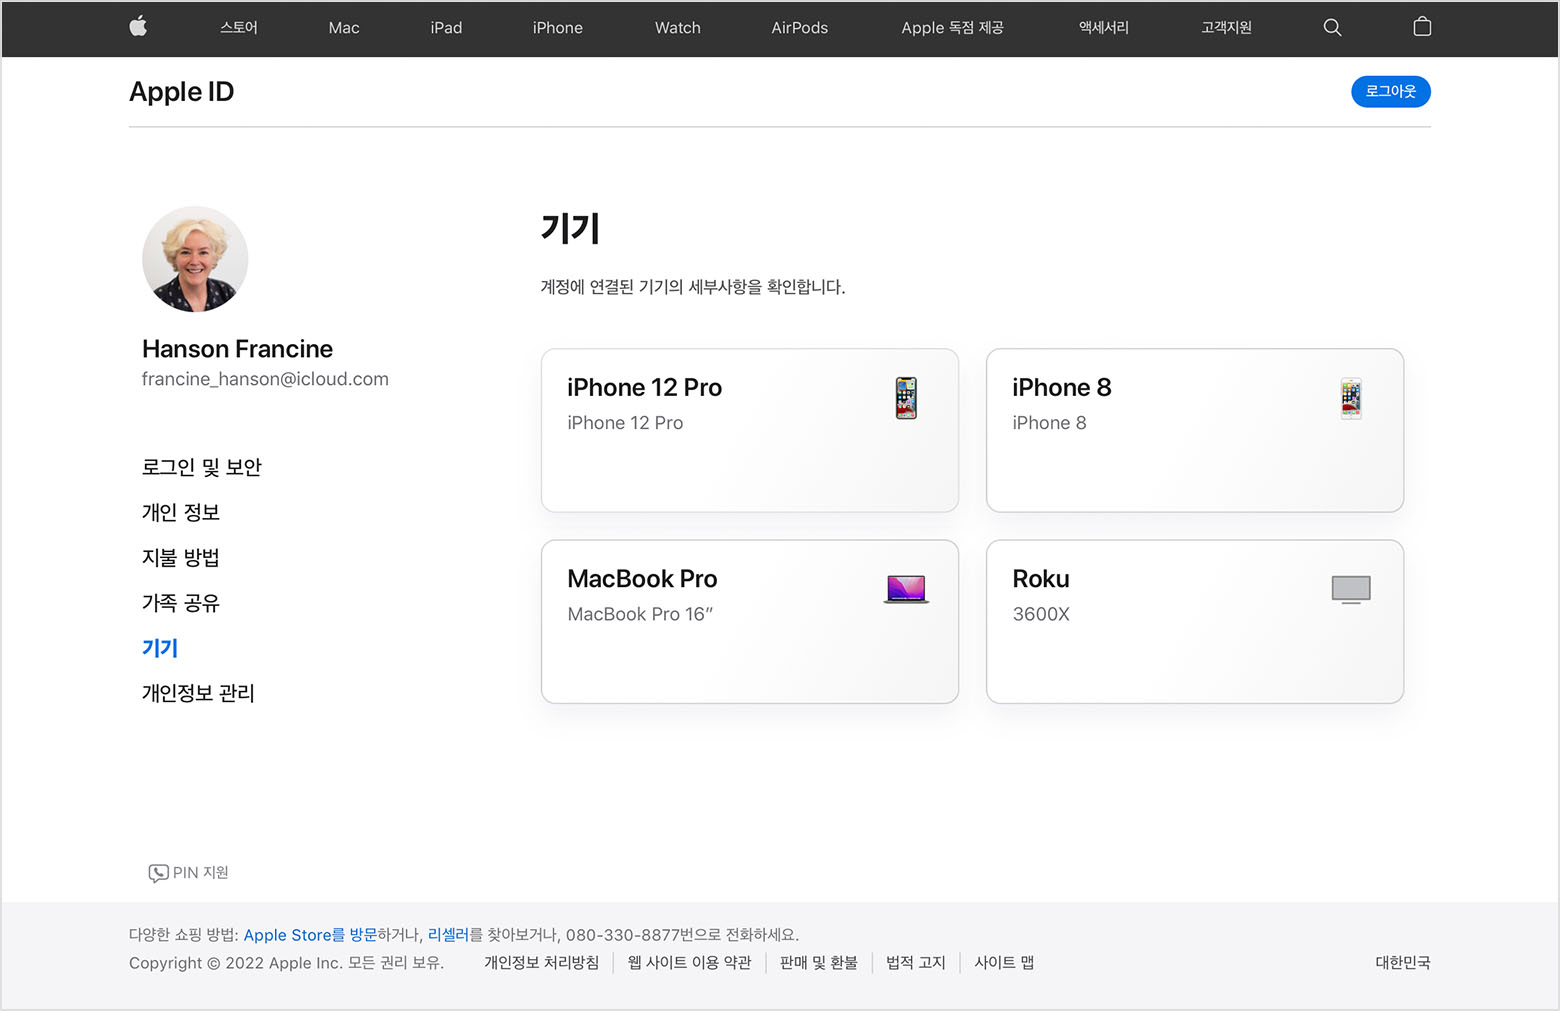 Francine Hanson의 세 가지 기기인 iPhone 12 Pro, MacBook Pro 및 Roku가 표시된 appleid.apple.com의 이미지.